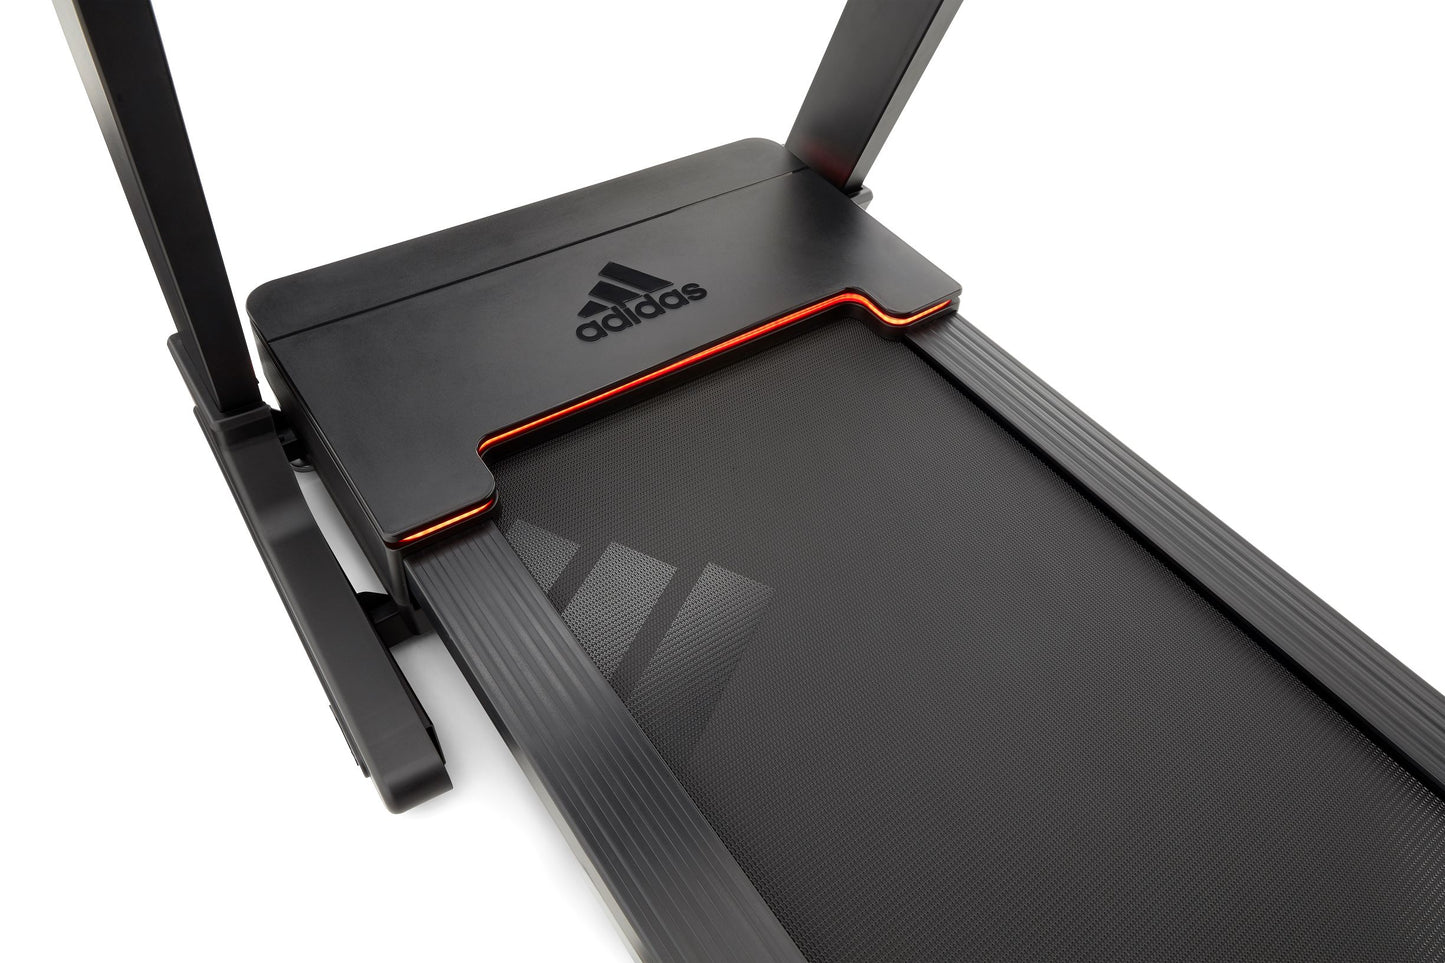 Adidas Treadmill T19x avus-1052 - PretorianBrands